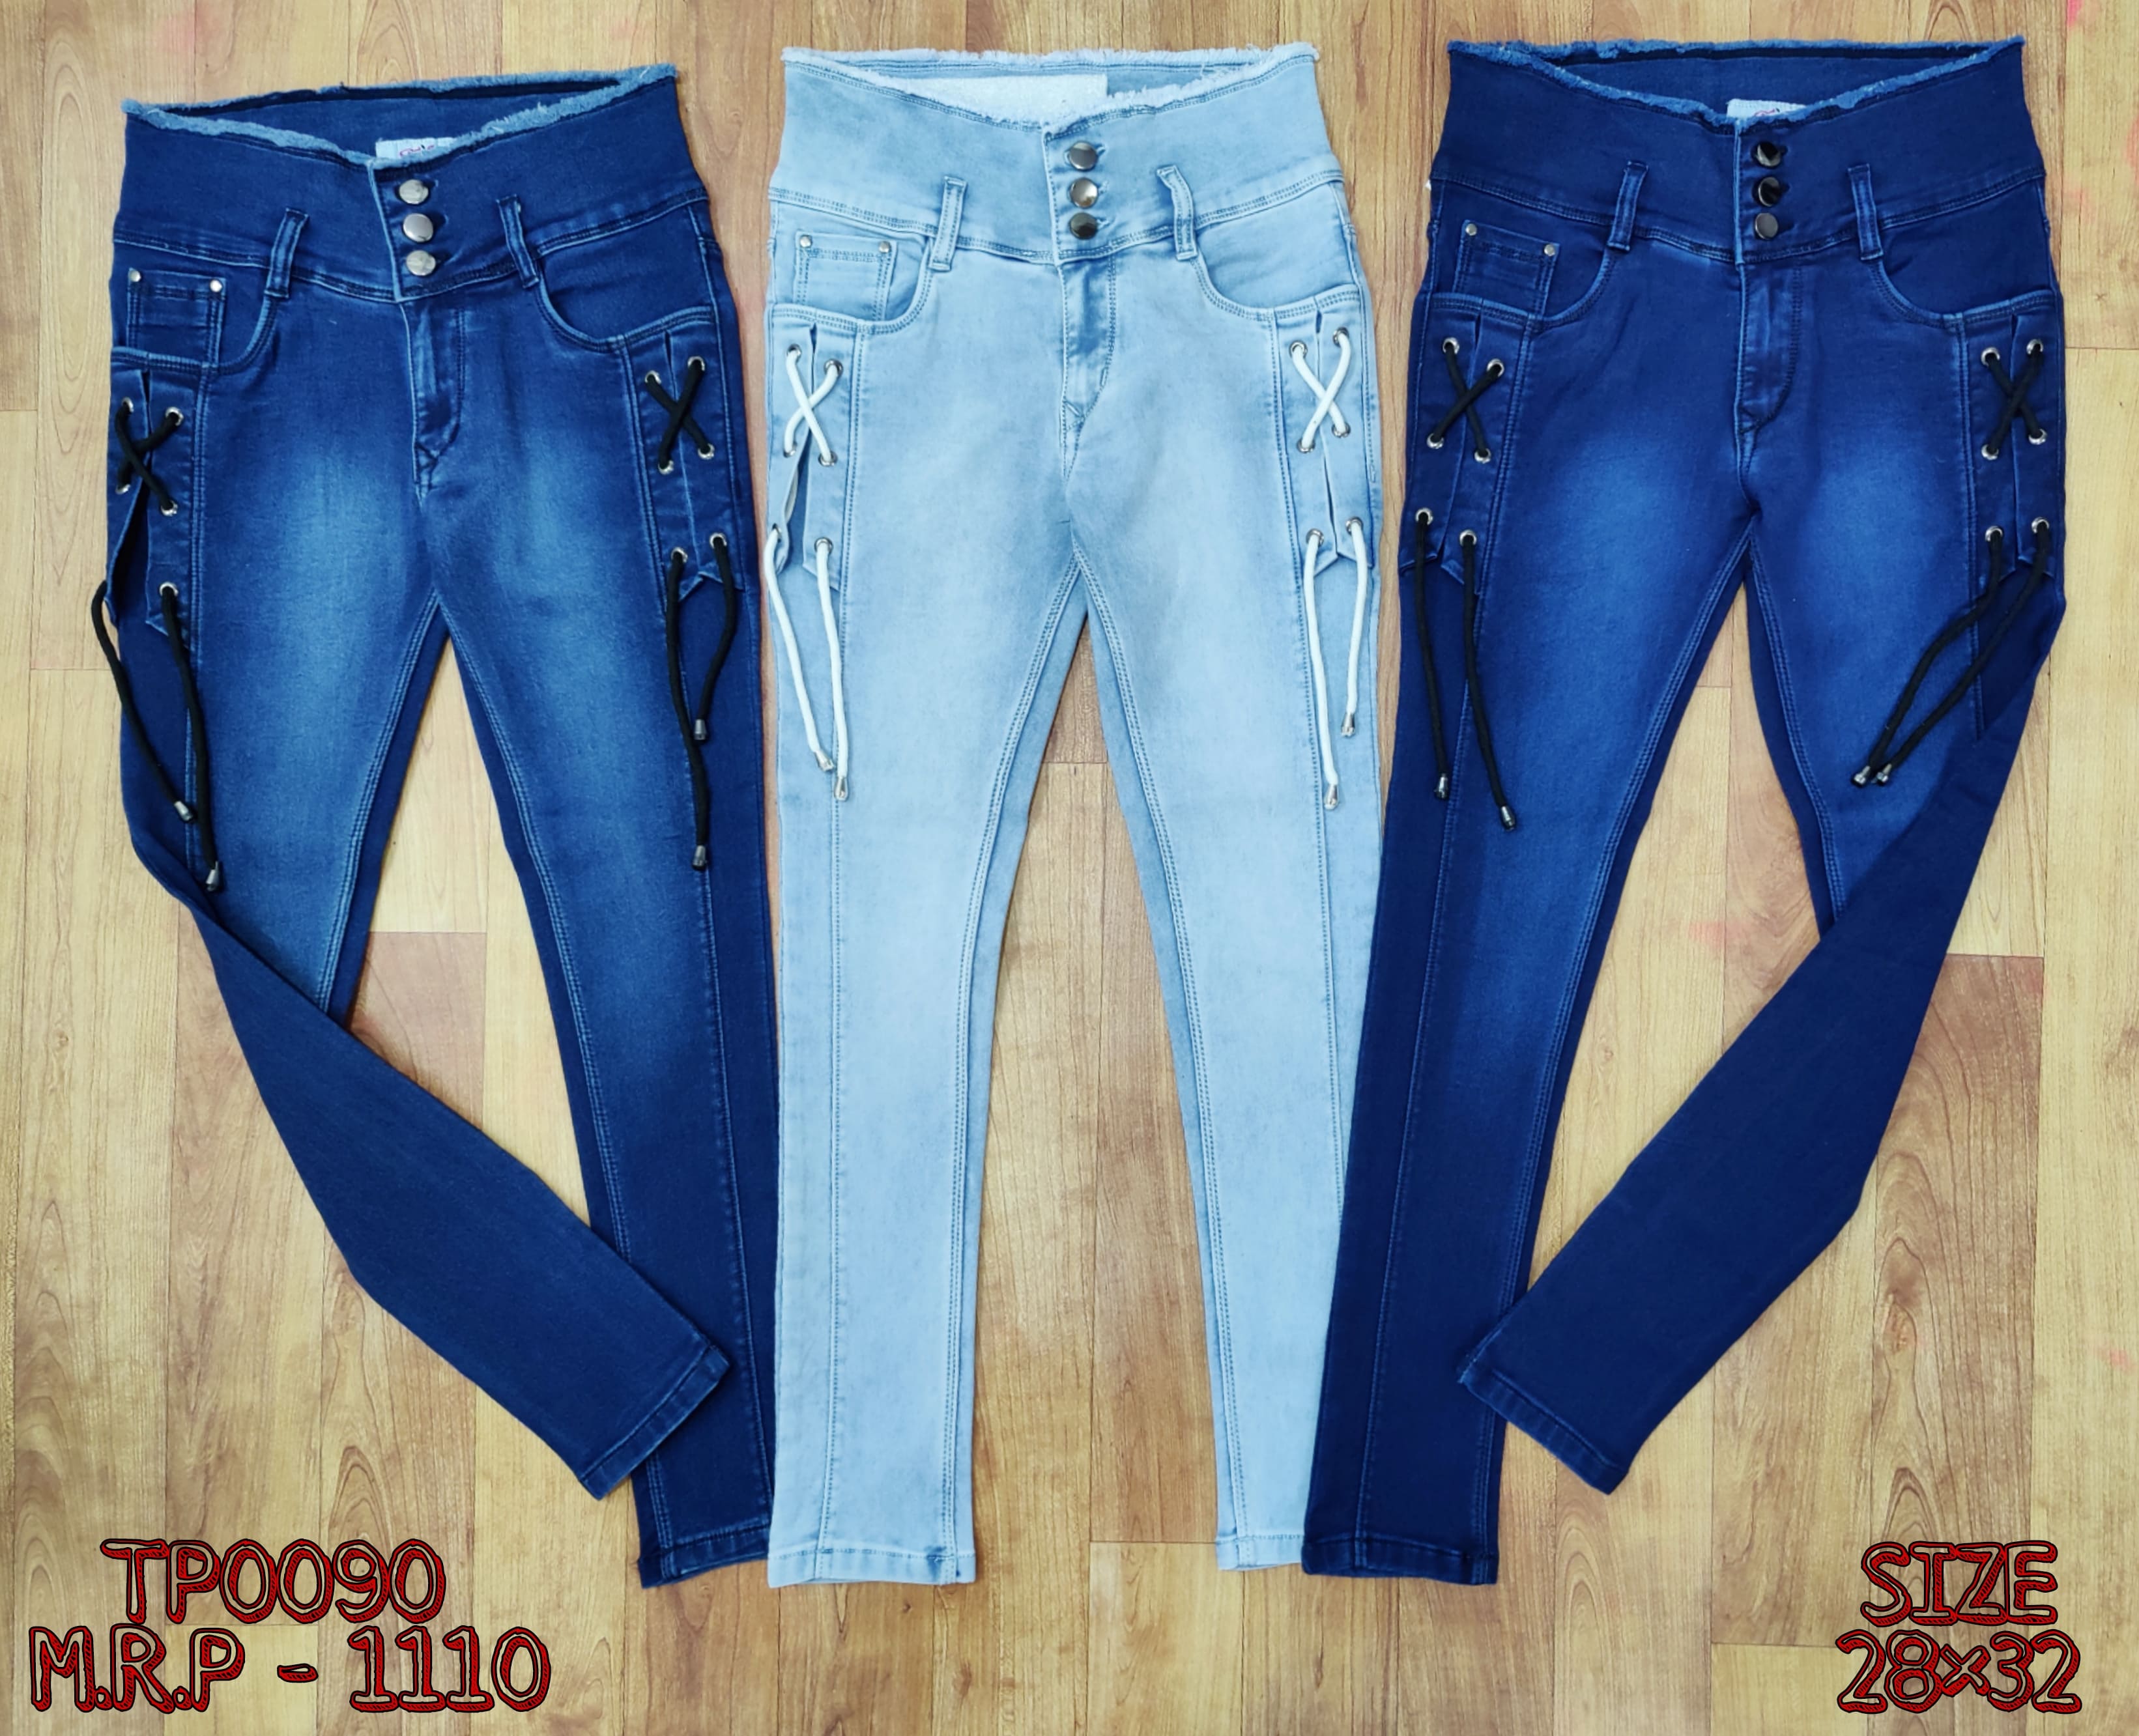 Tispy Designer Girl's Jeans